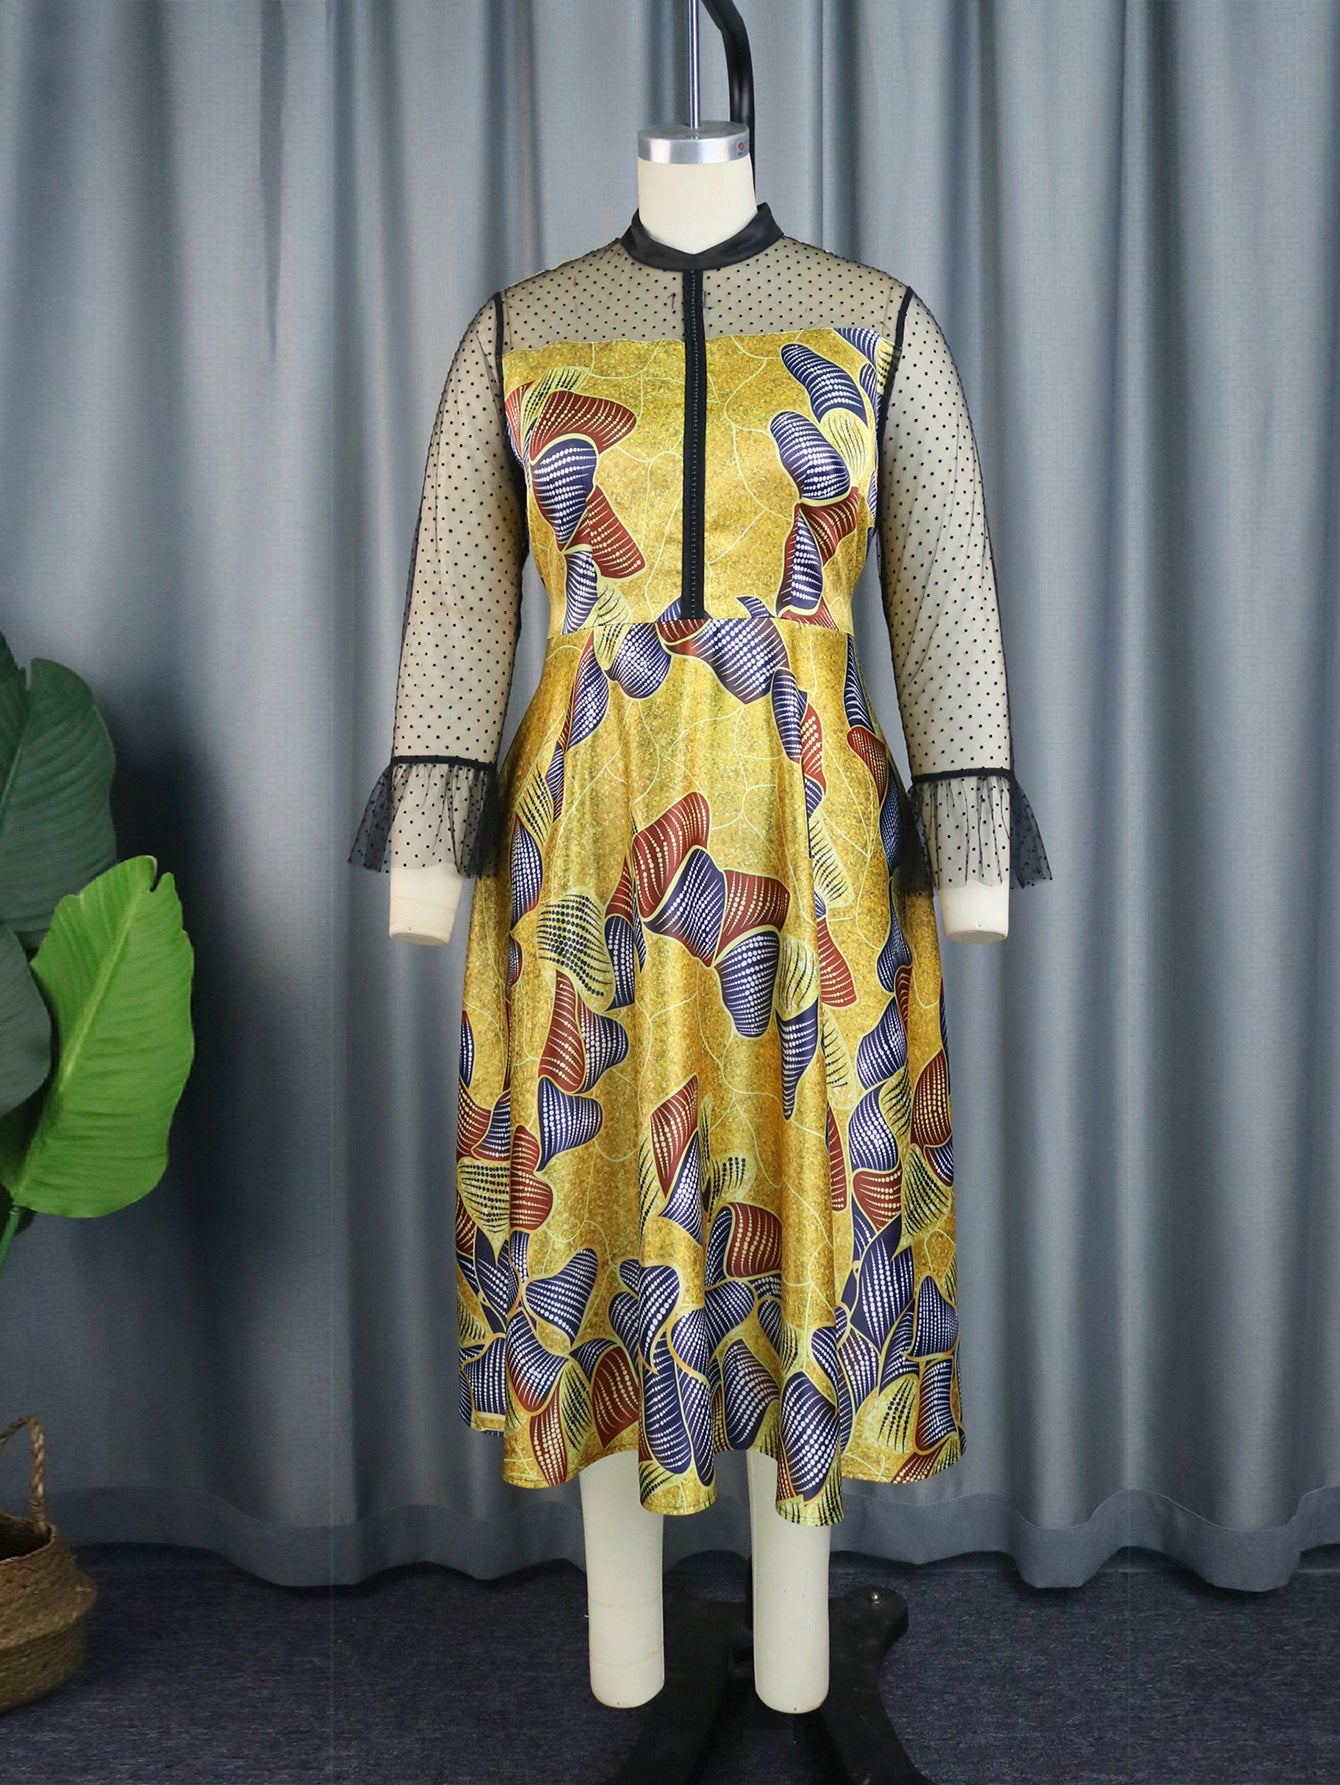 Sukienka siateczkowa z nadrukiem w stylu vintage, luźną talią i kokardą, sznurowana. Sukienka o linii